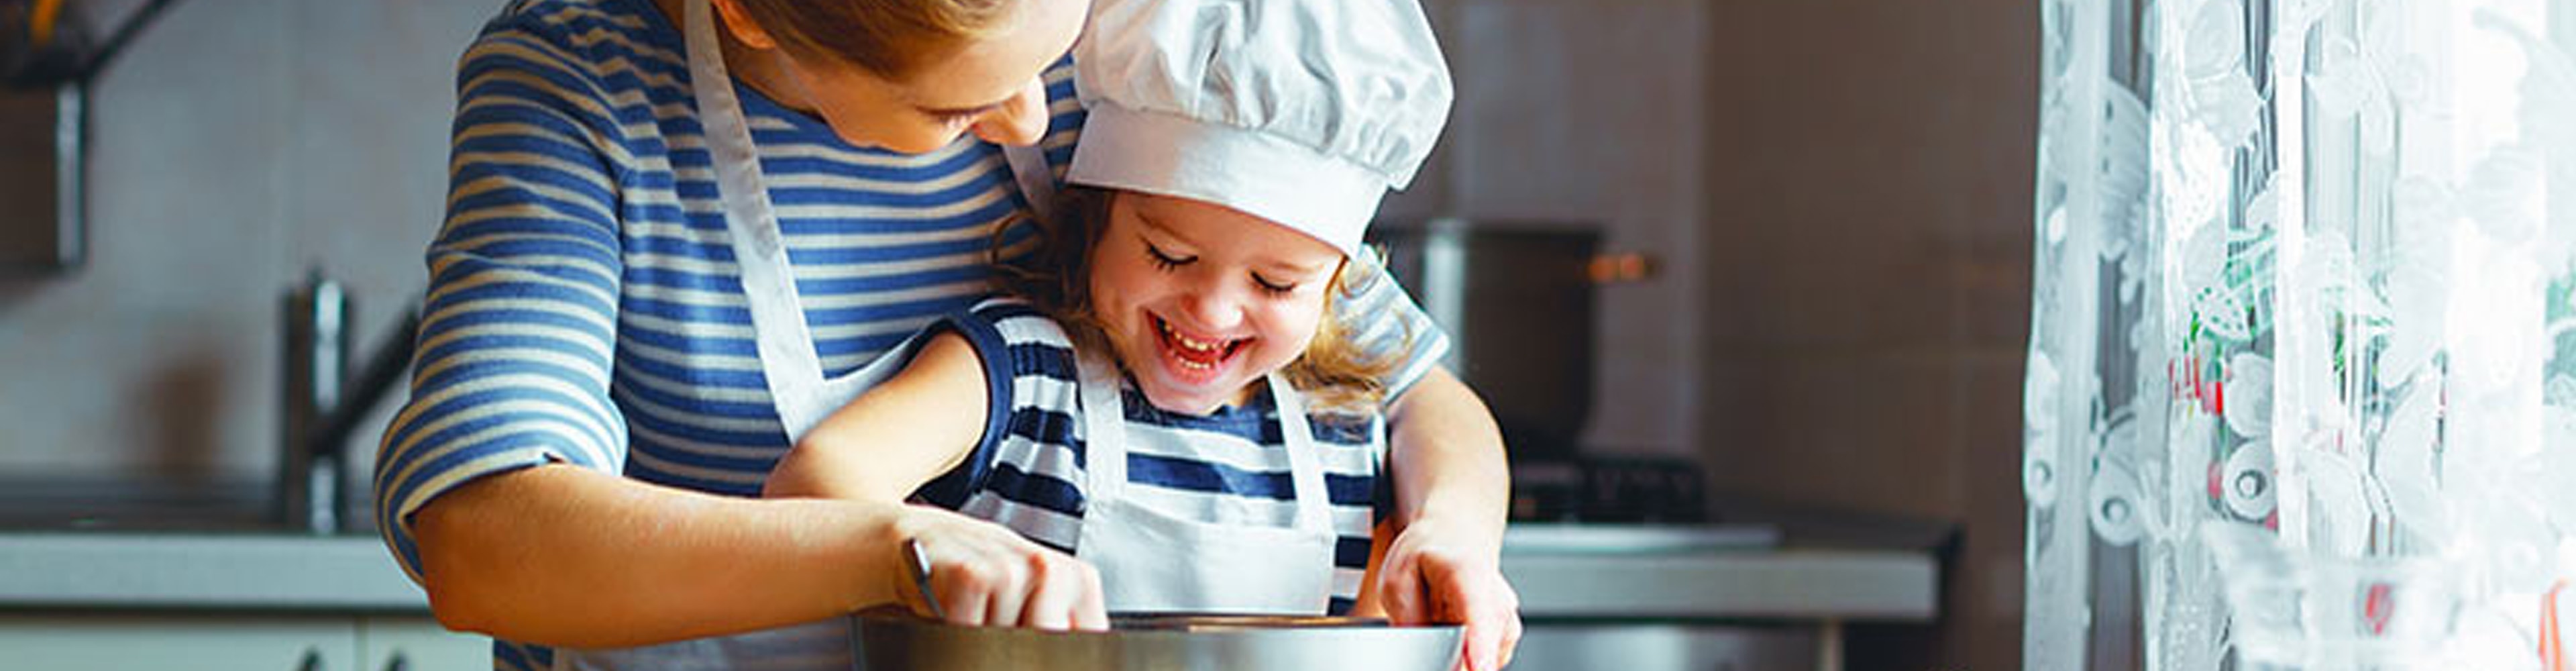 Comment cuisiner avec des enfants sans se stresser?